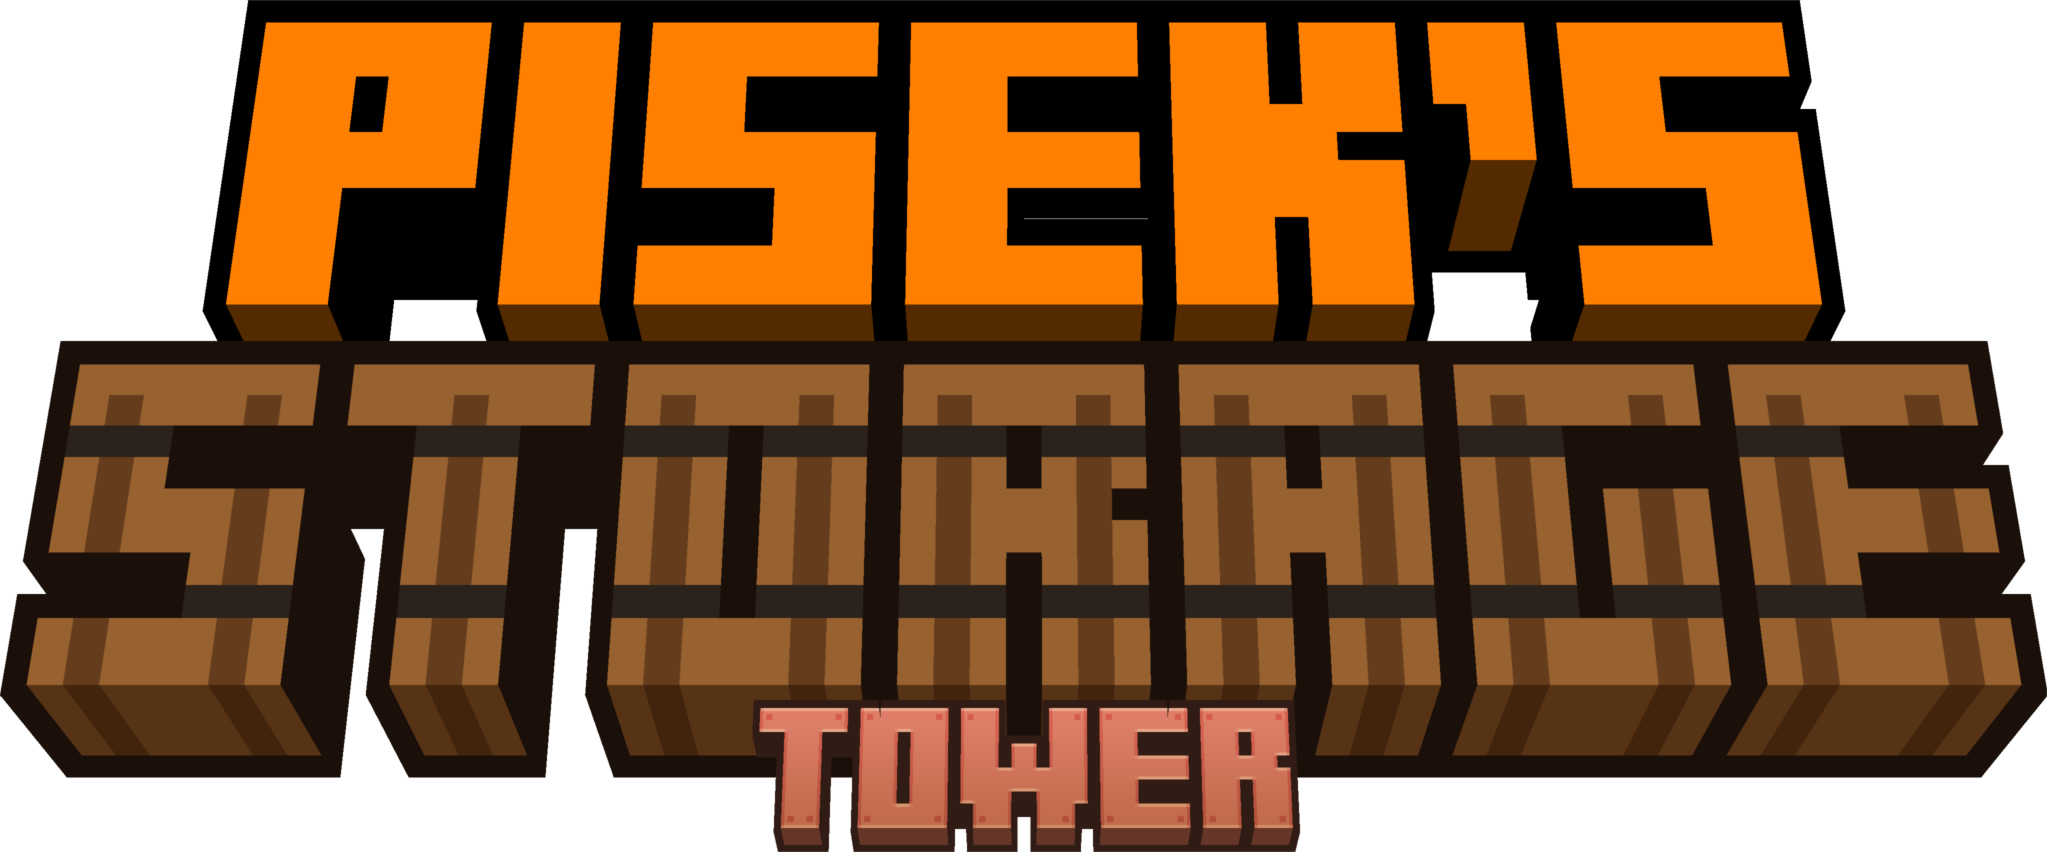 Pisek's Storage Tower